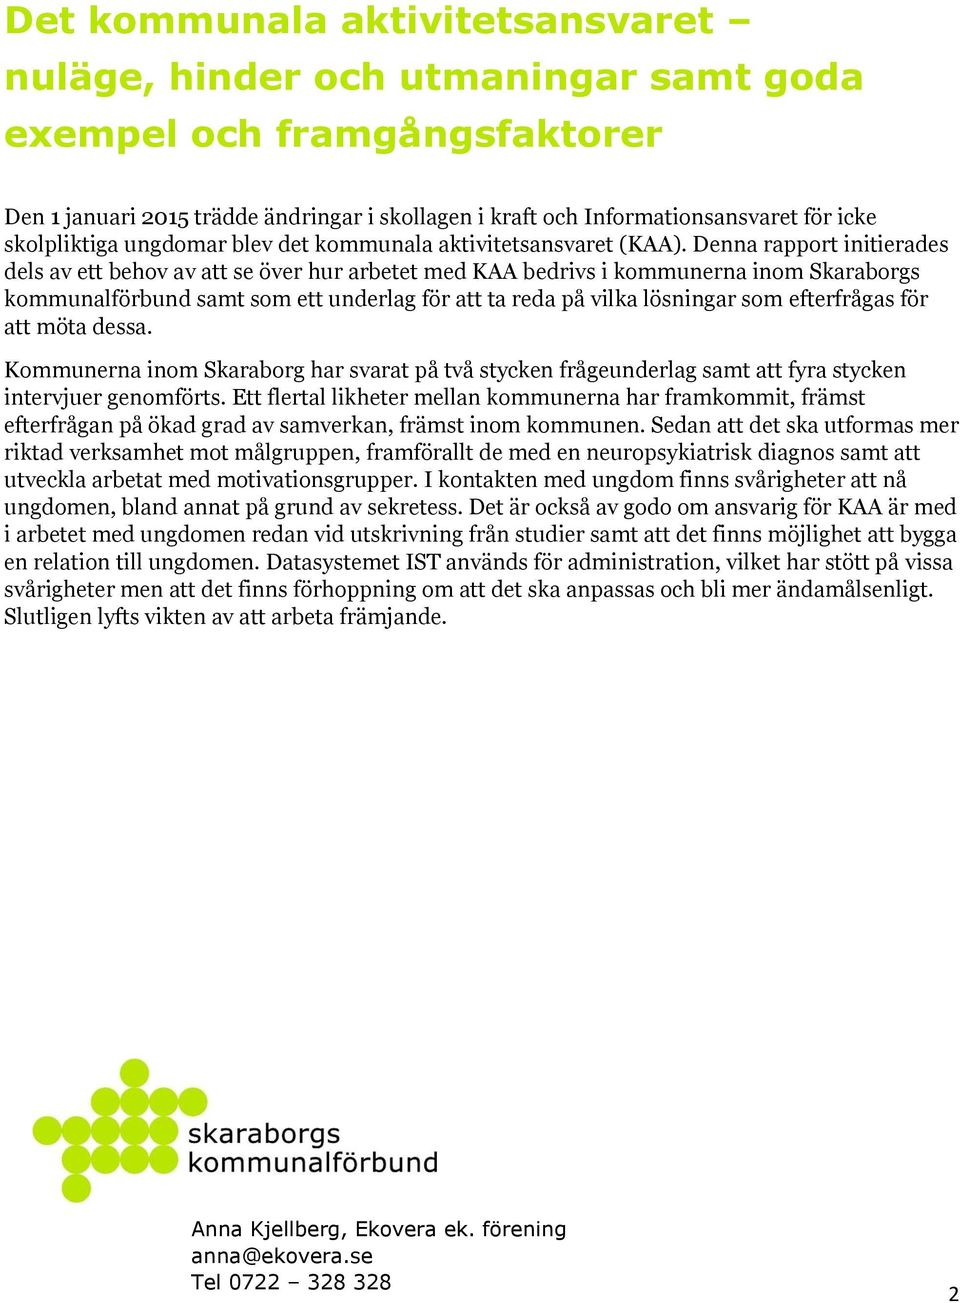 Denna rapport initierades dels av ett behov av att se över hur arbetet med KAA bedrivs i kommunerna inom Skaraborgs kommunalförbund samt som ett underlag för att ta reda på vilka lösningar som